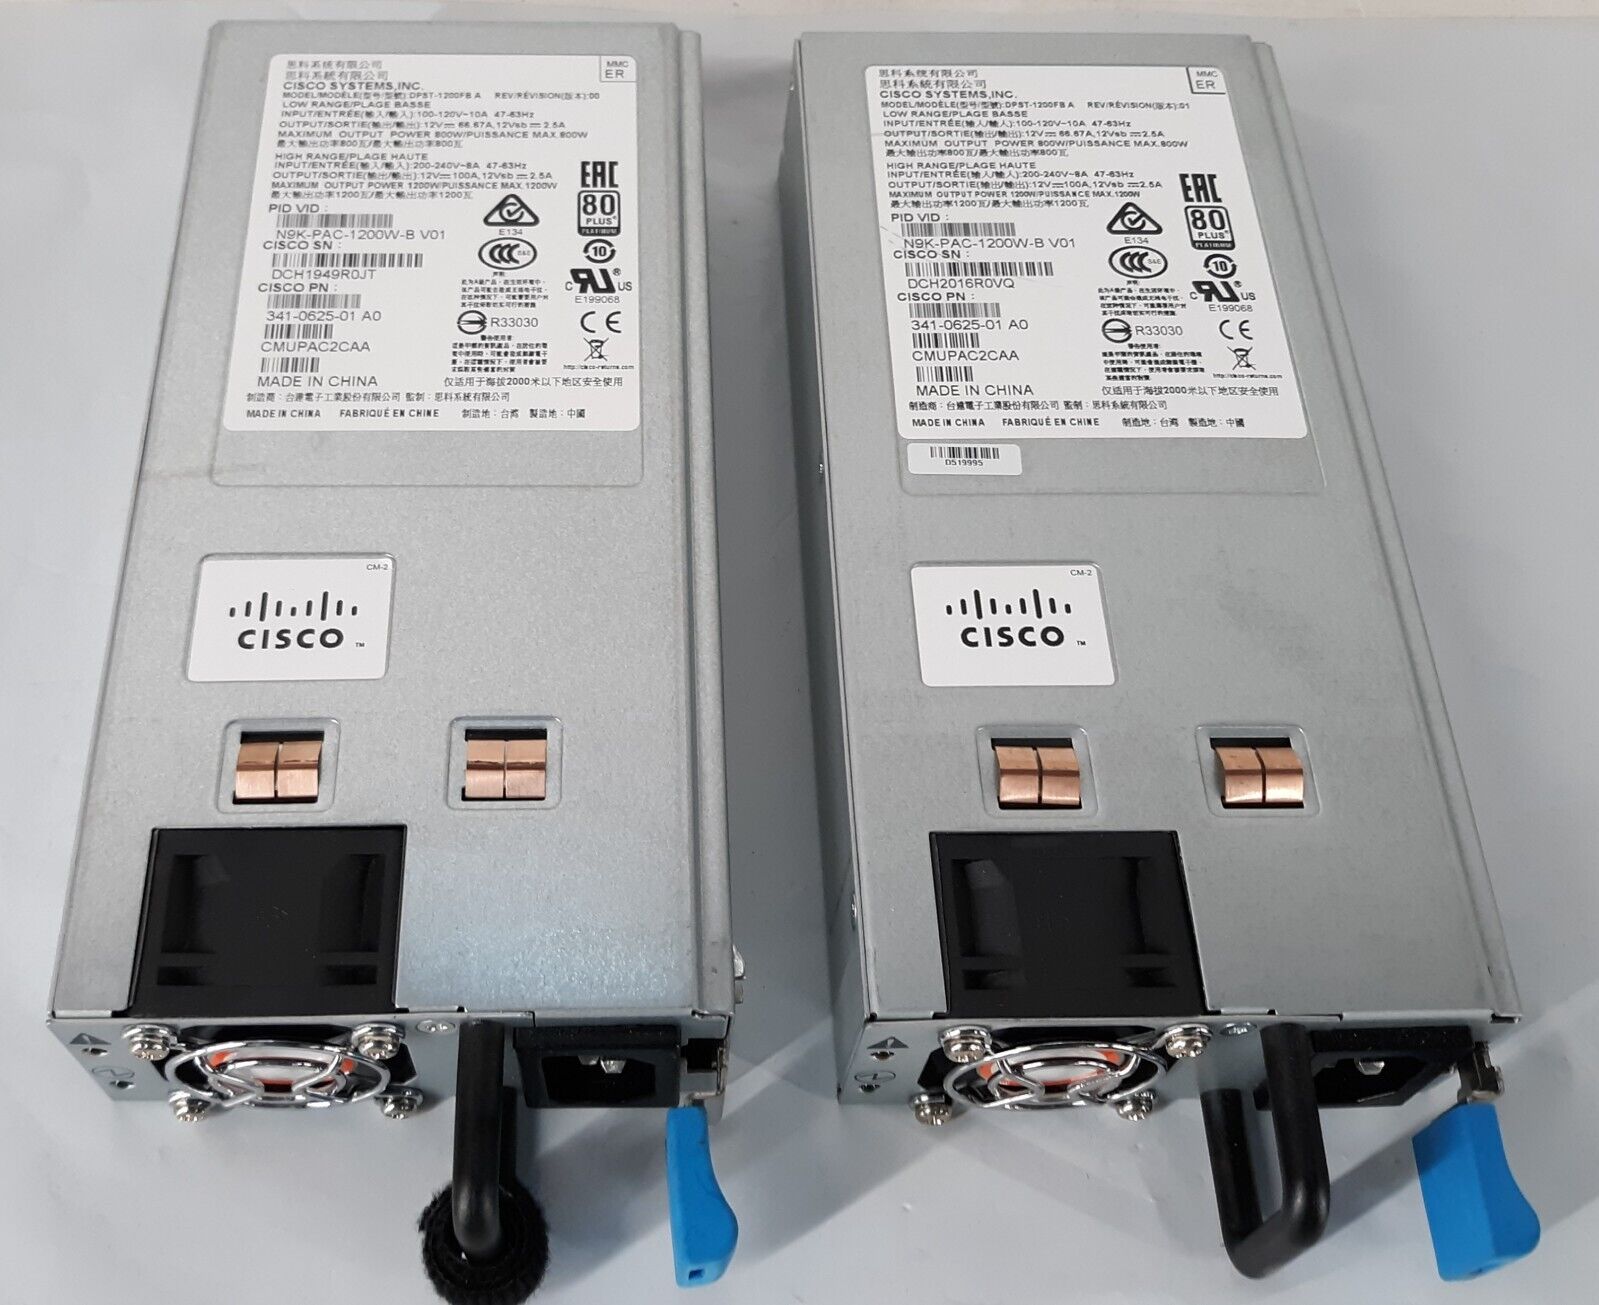 Pair of Cisco N9K-PAC-1200W-B V01 1200W 341-0625-01 Power Supply